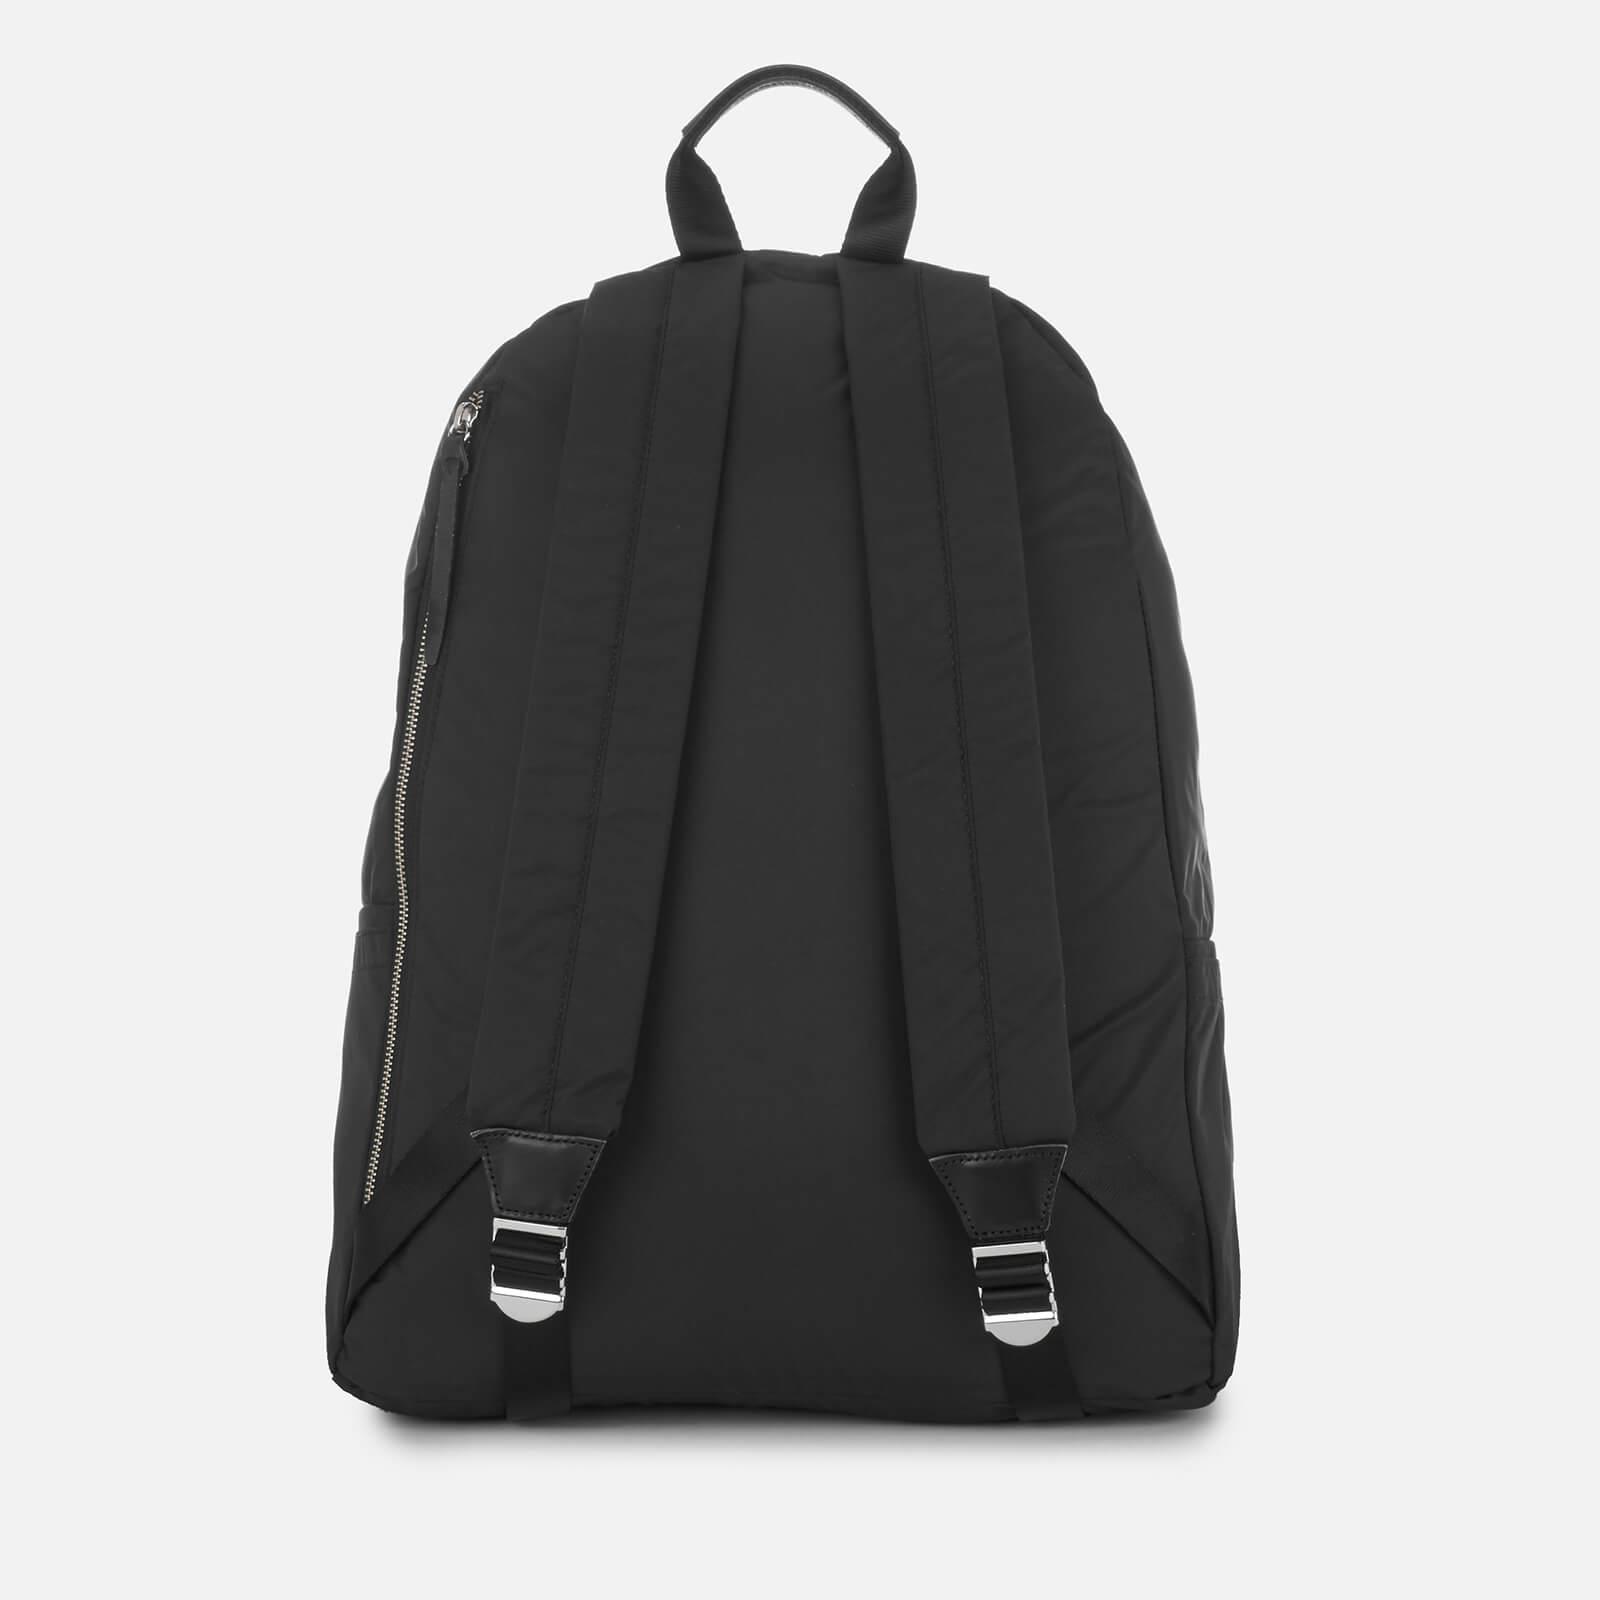 Lyst - Eastpak Japan Padded Pak'r Xl Backpack in Black for Men